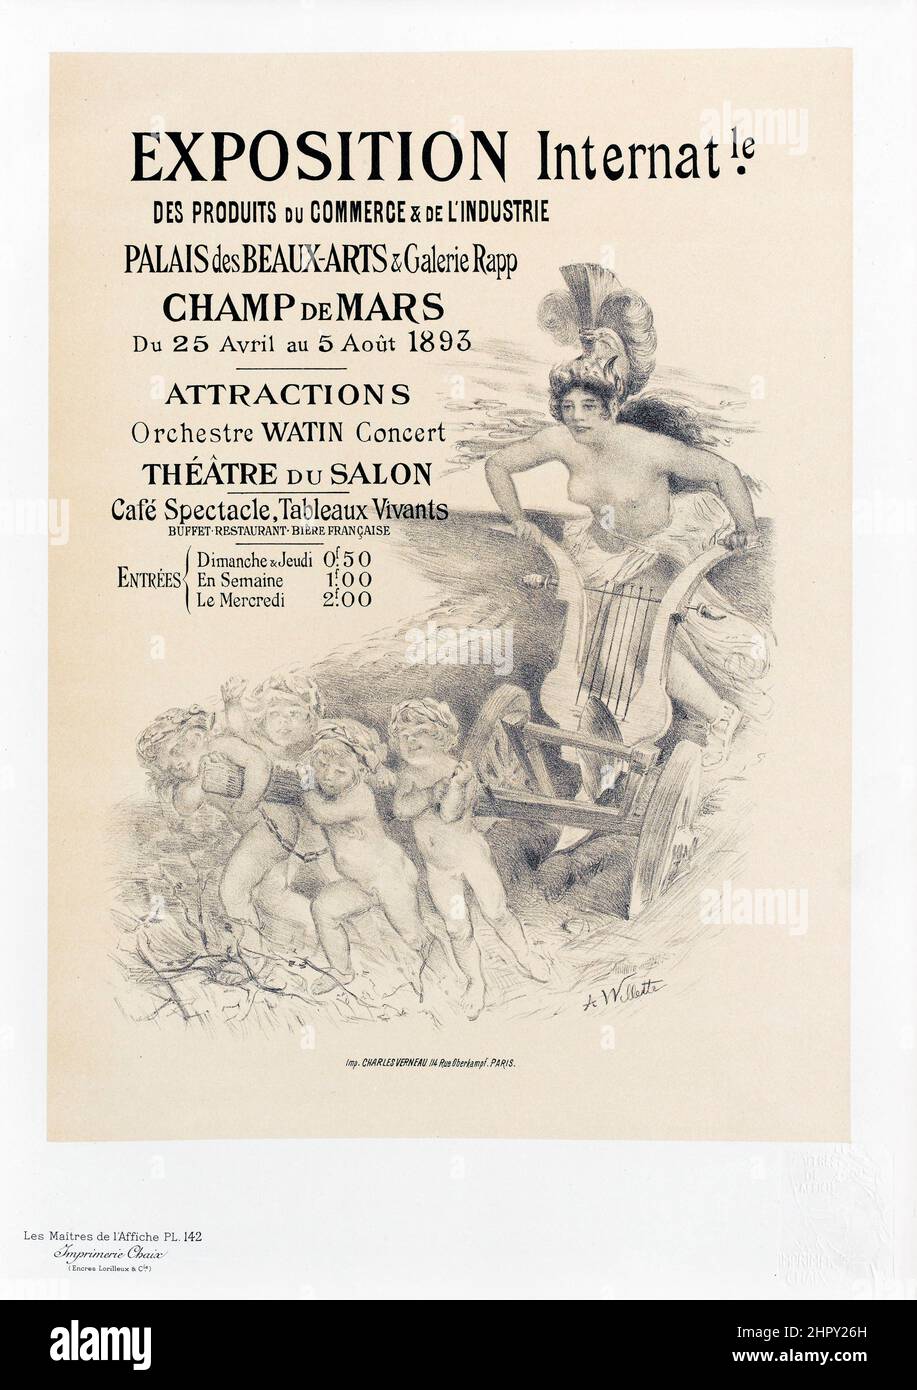 Maitres de l'affiche Vol 3 - Plate 142 - Adolphe Willette - Exposition Internat. Champ de Mars 1893. Disegno. Foto Stock